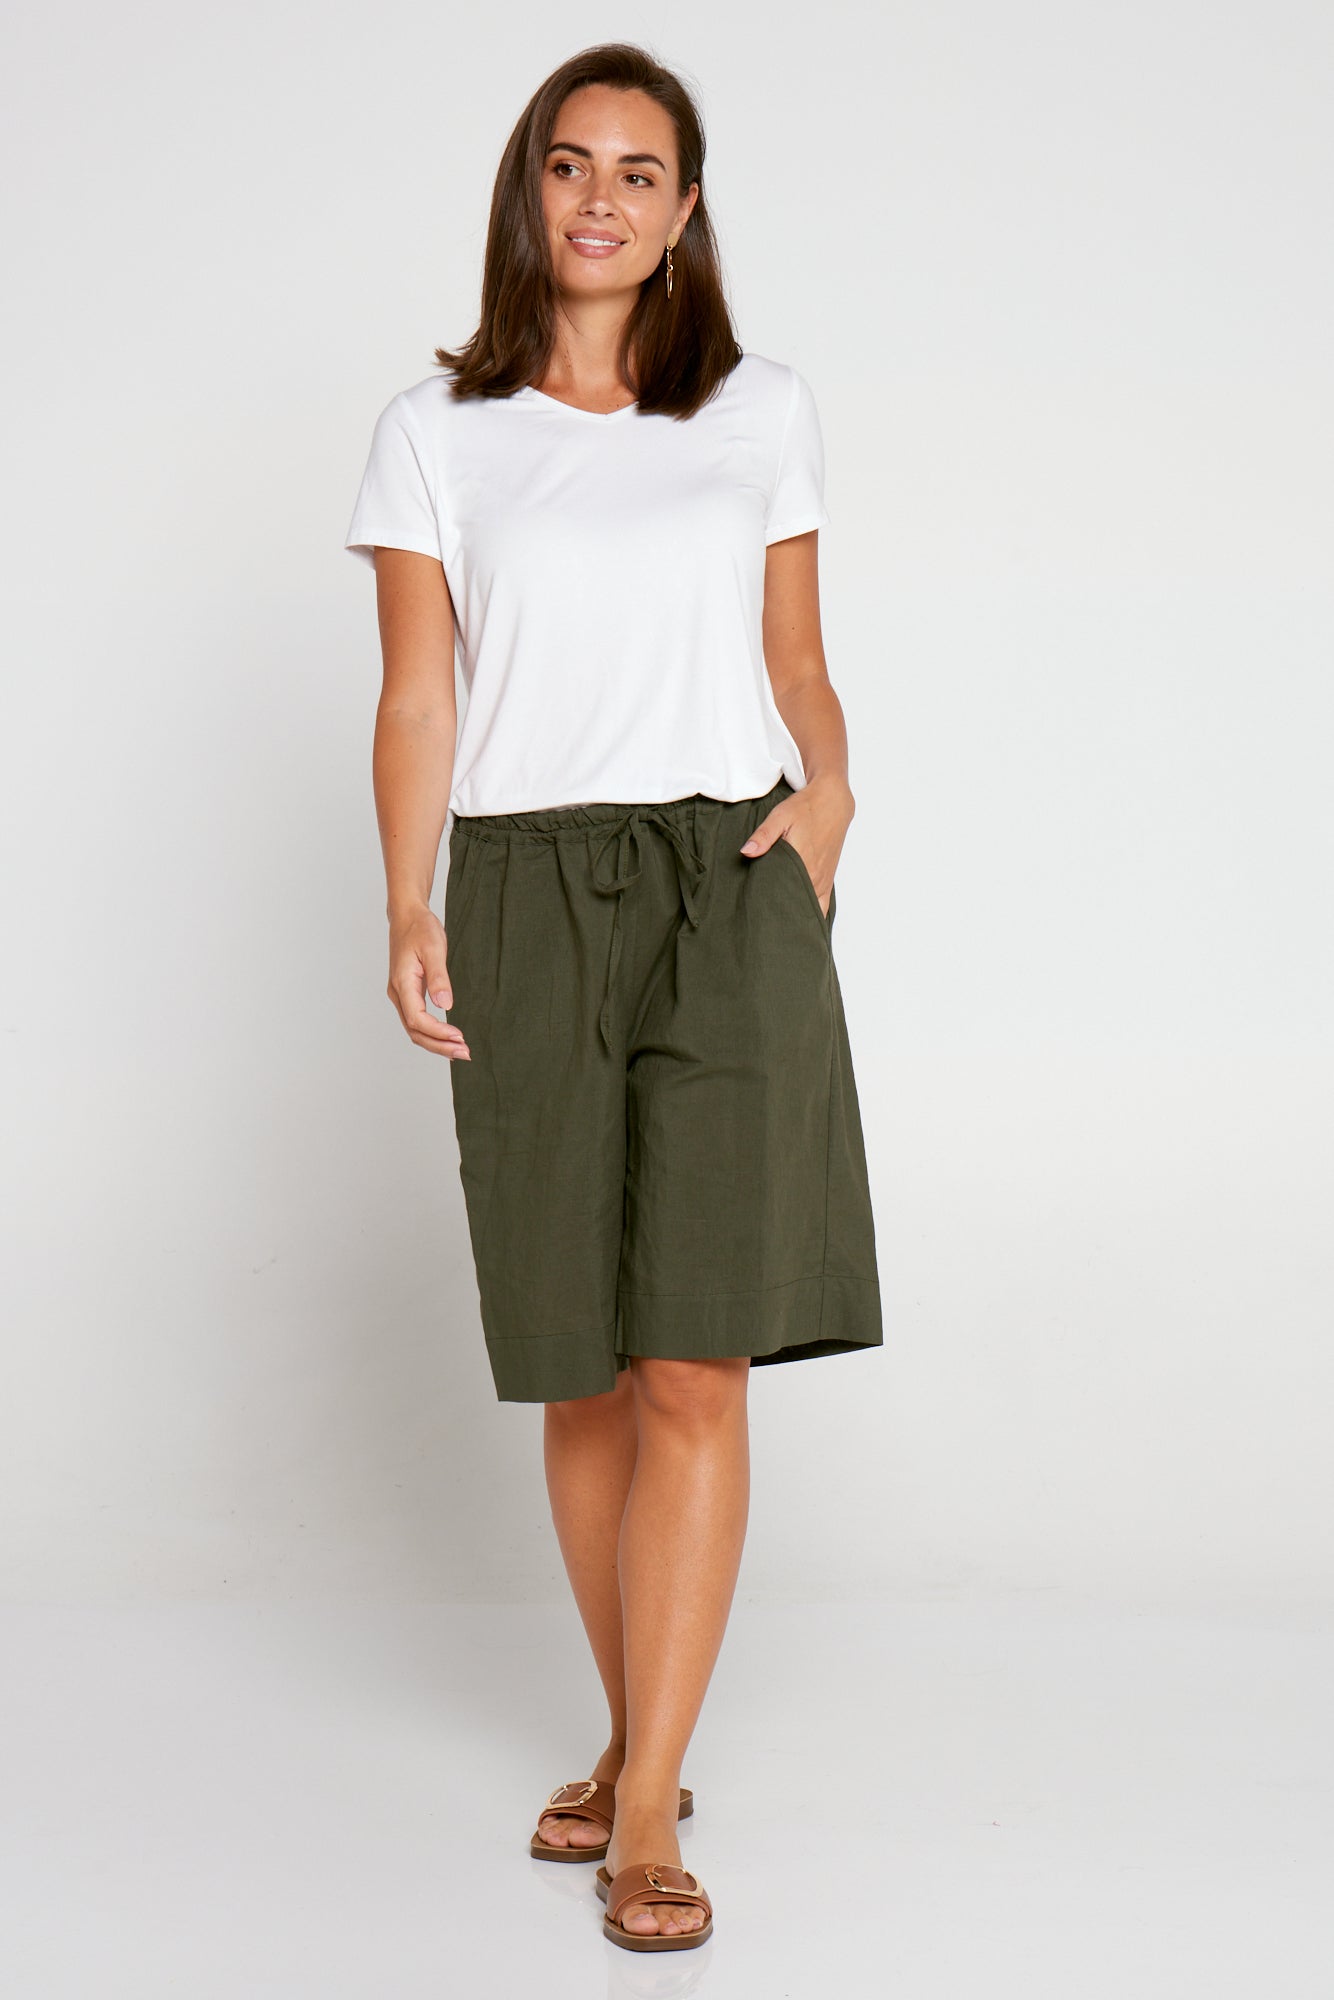 Zhuri Linen & Cotton Shorts - Khaki